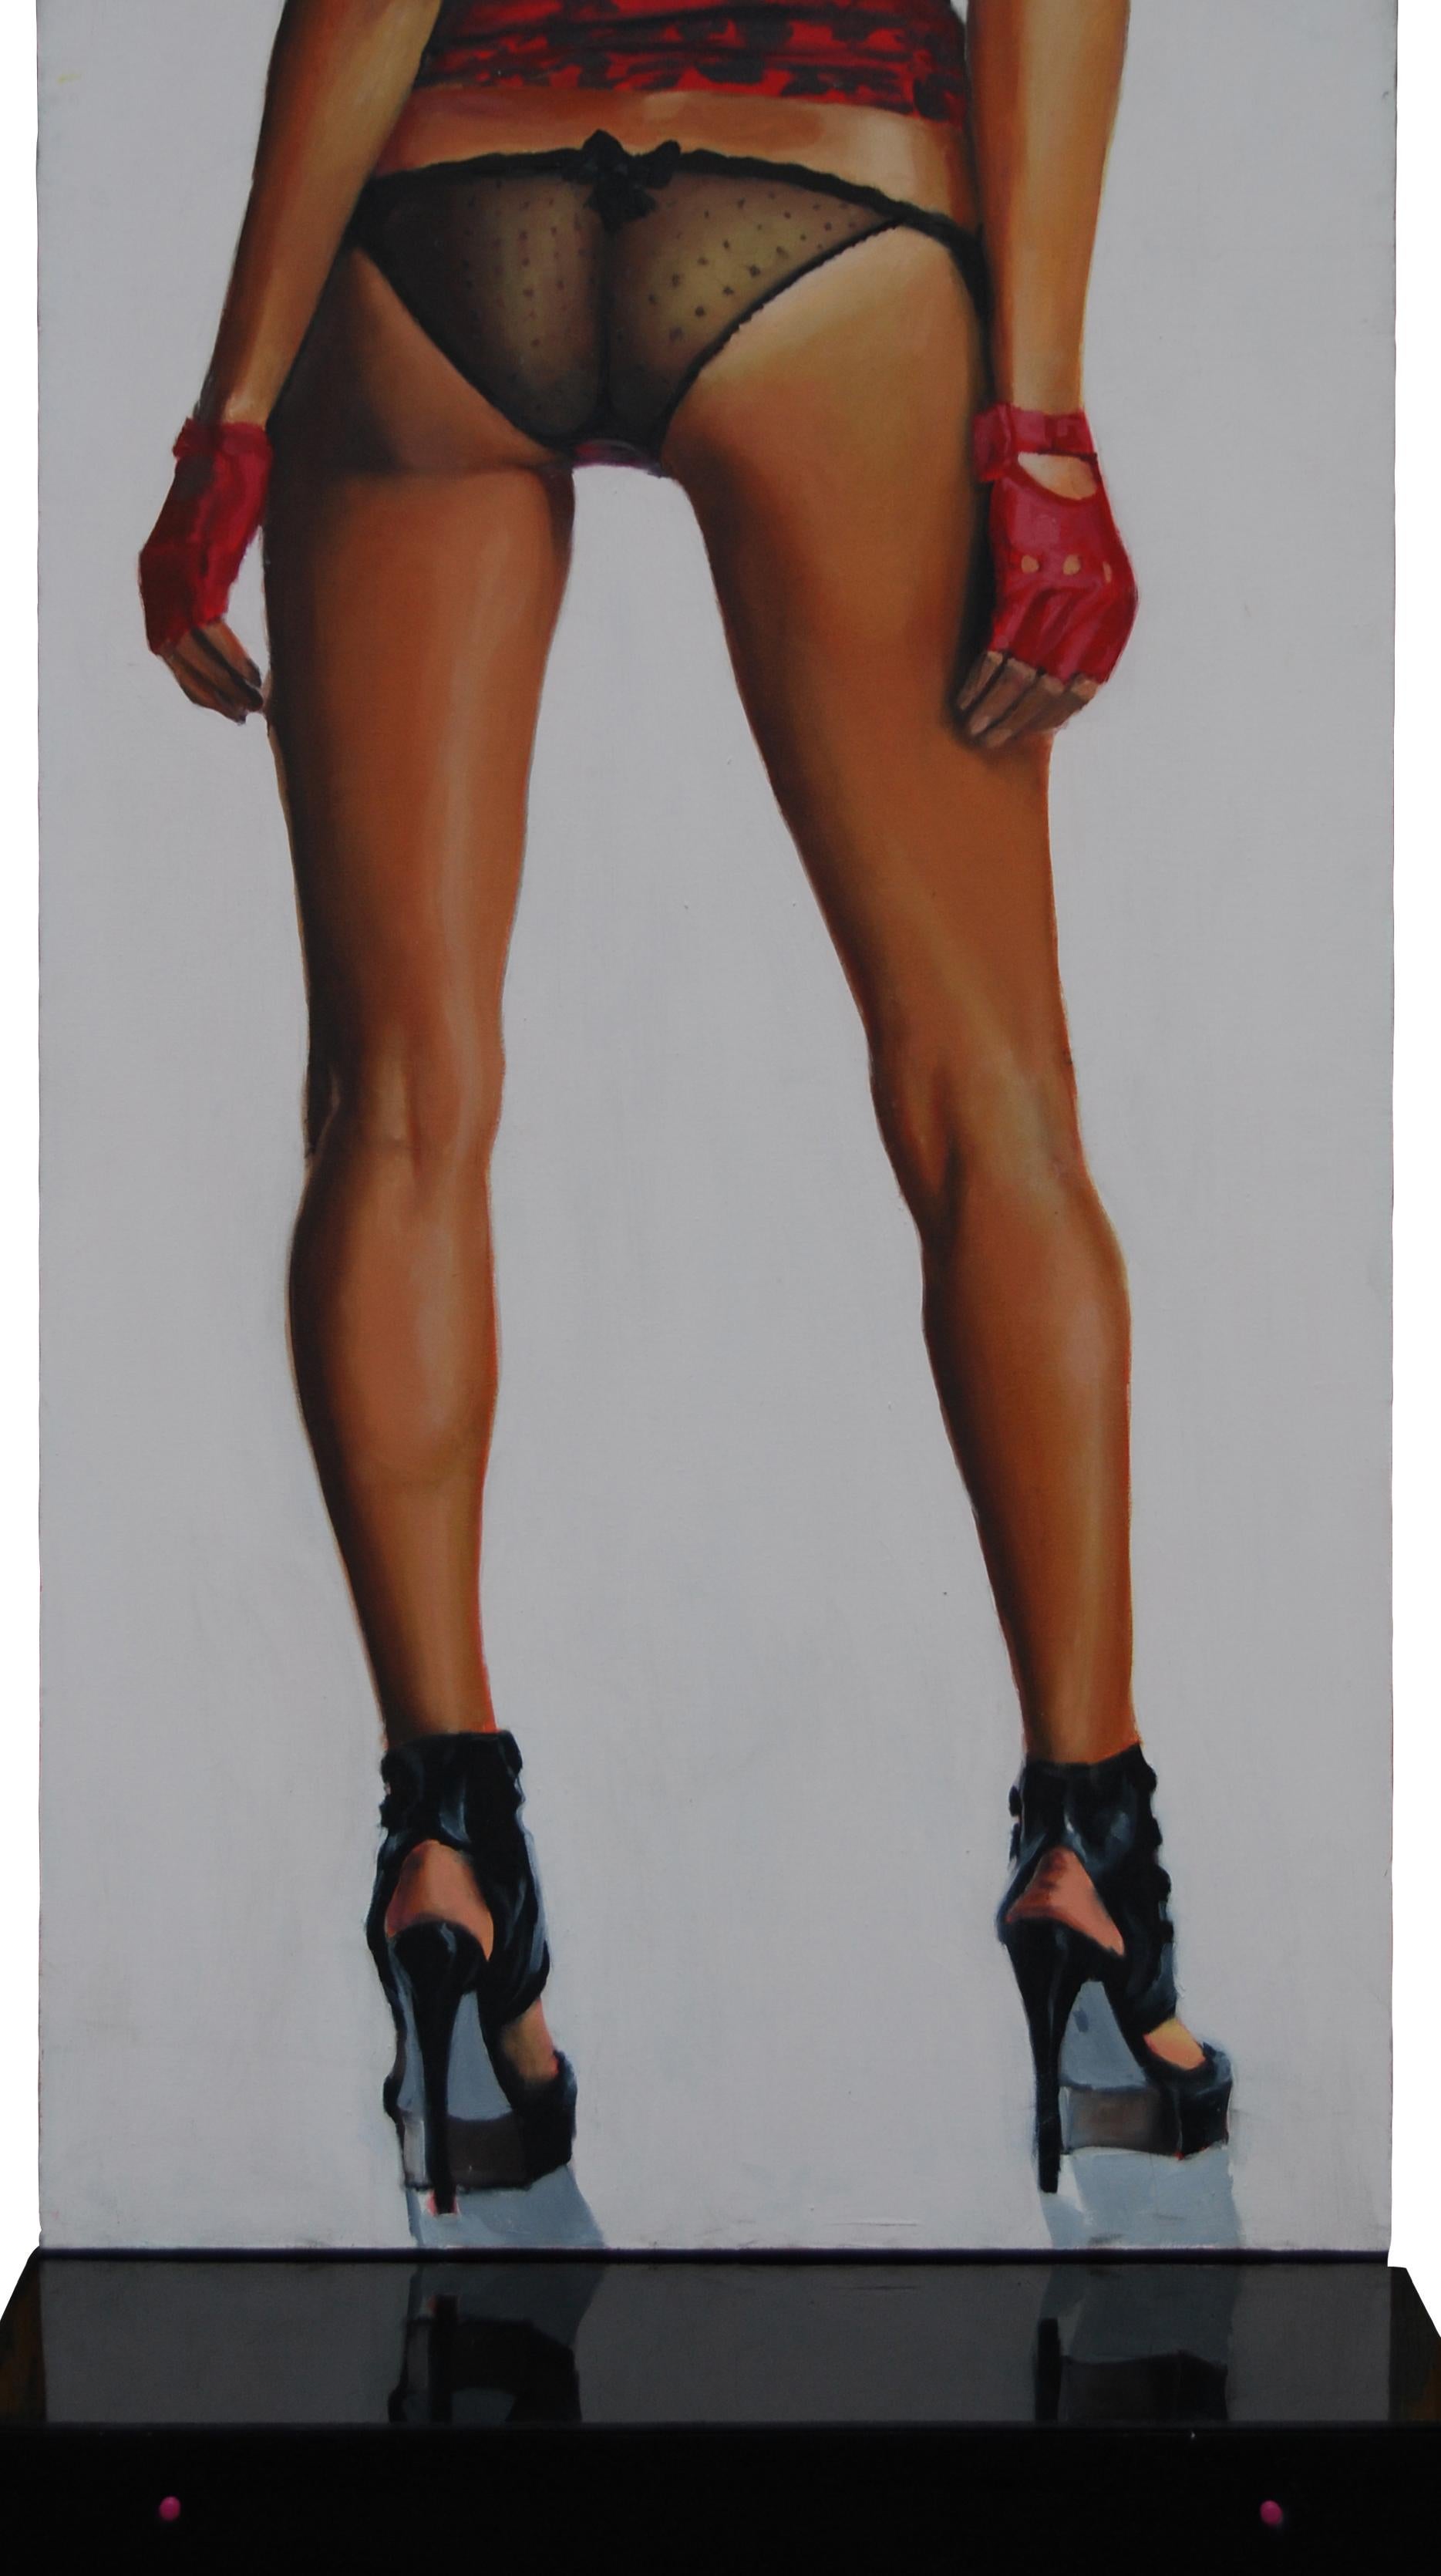 Useful Object Cut - Contemporary, Legs, Woman, High Heels, Vertical, Pop Art - Mixed Media Art by Mihai Florea